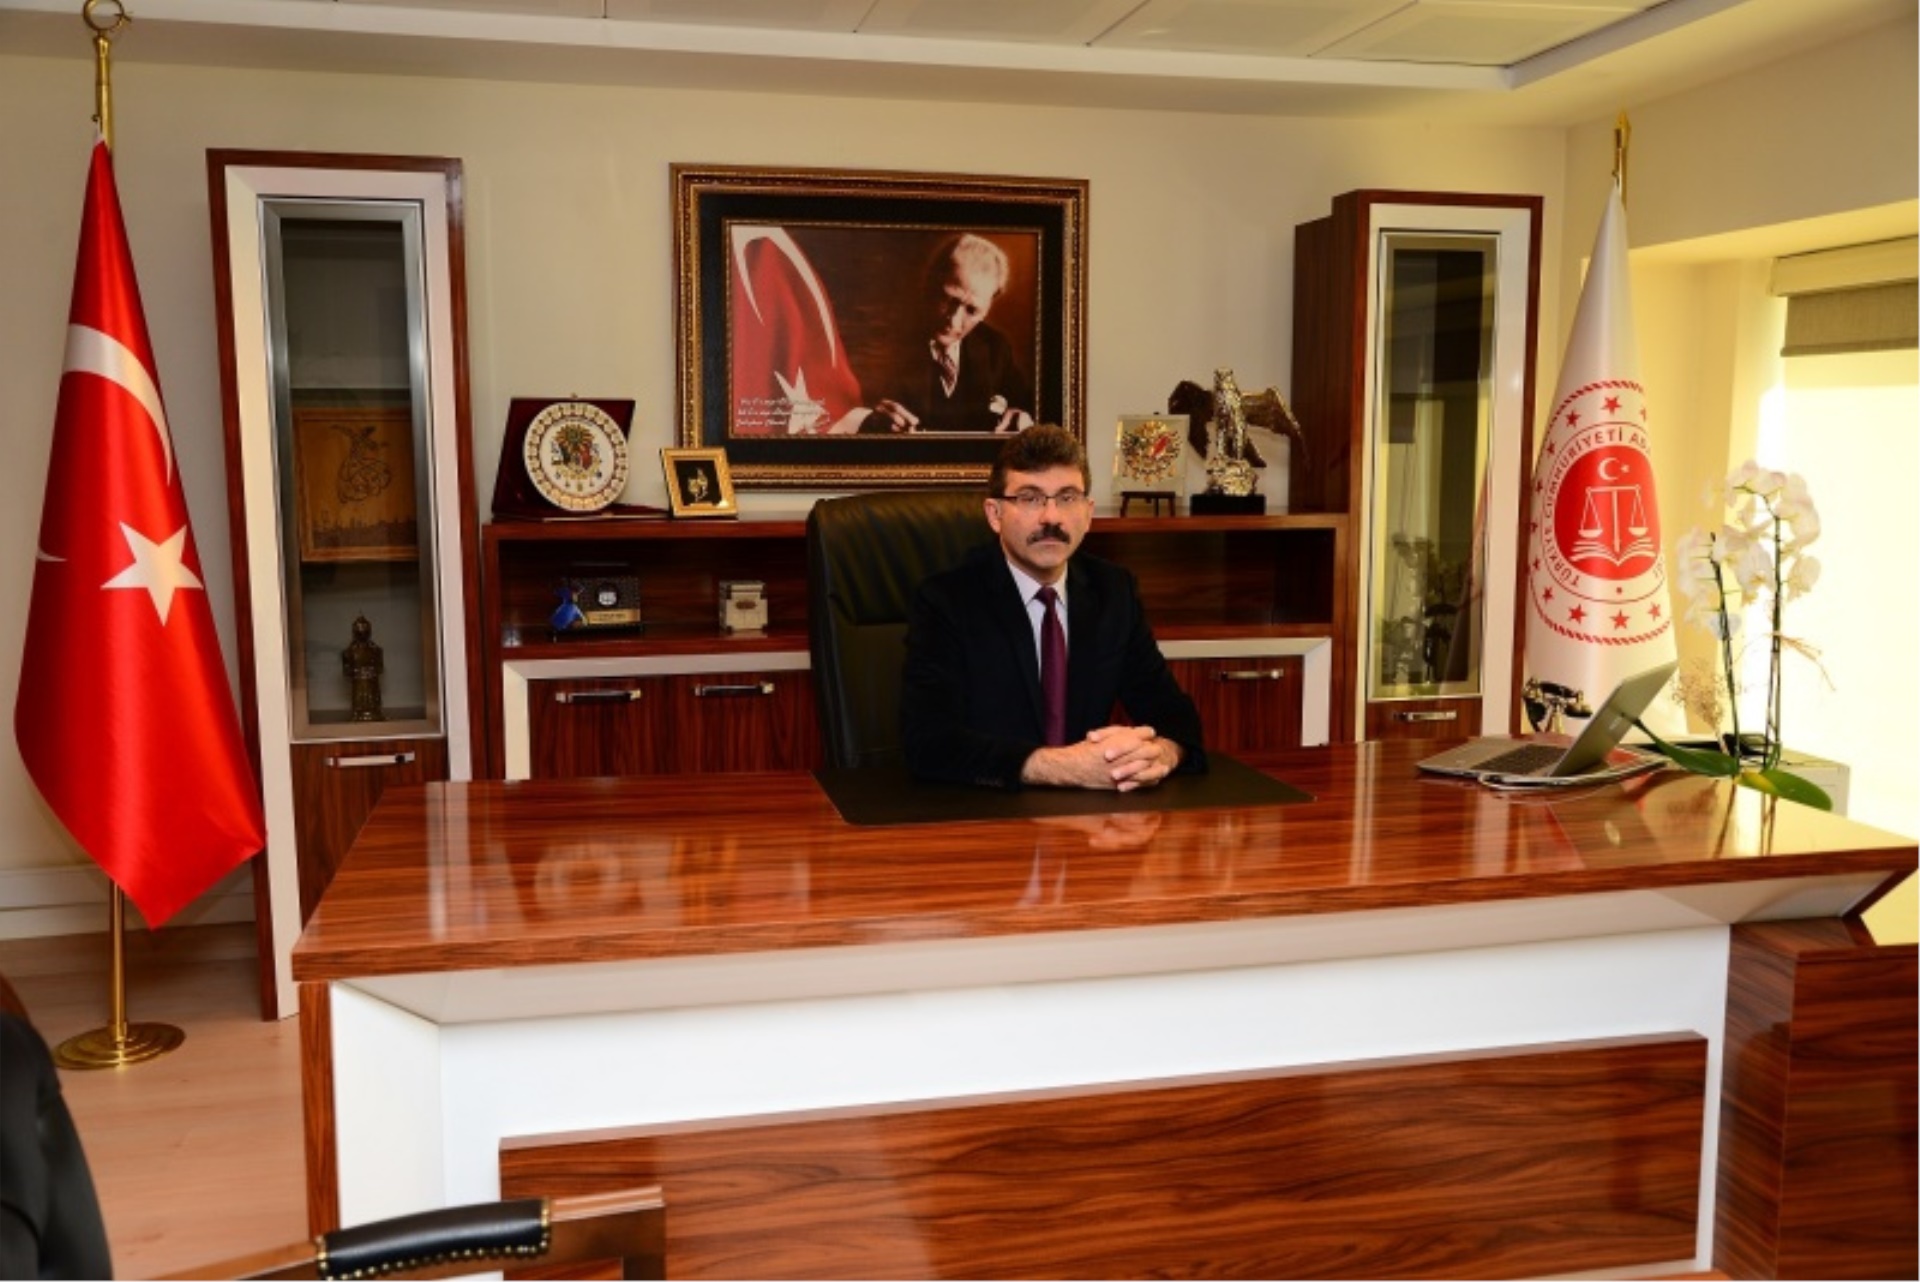 Trabzon Bölge Adliye Mahkemesi Başkanı Sayın İbrahim KOLCU, Hâkimler ve Savcılar Kurulu Üyeliğine Seçilmiştir